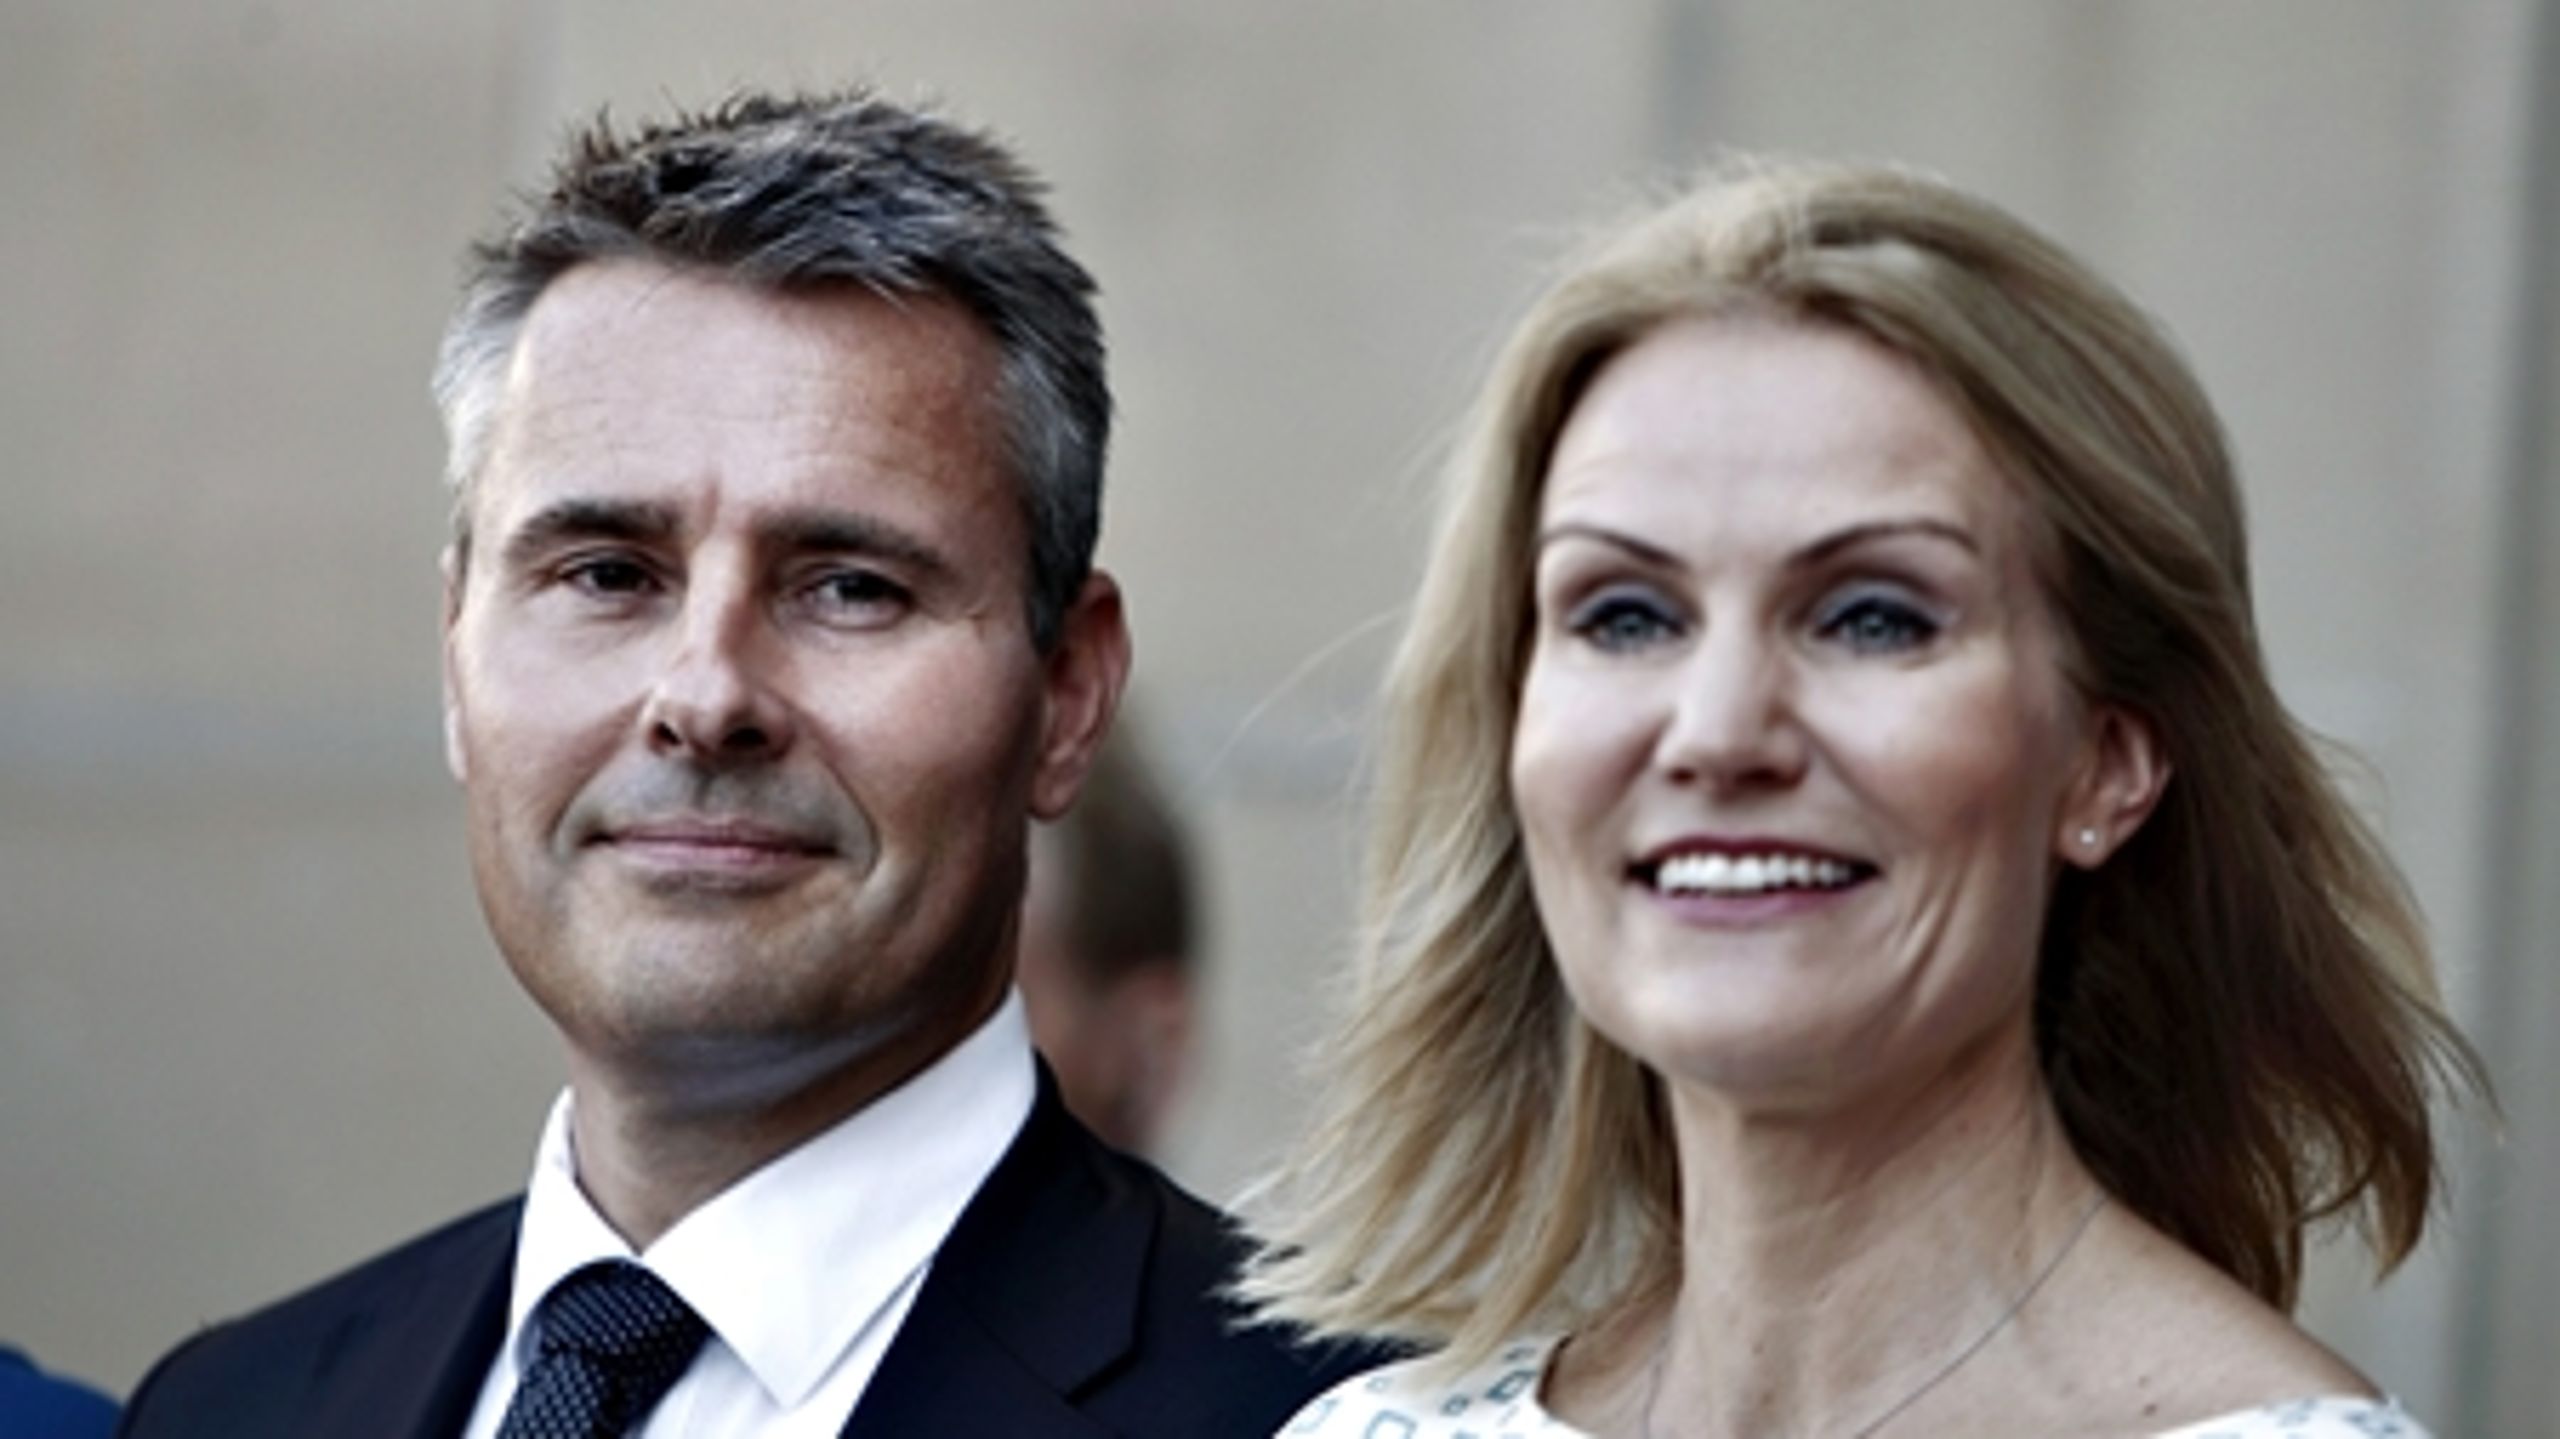 Henrik Sass Larsen (S) blev fredag formiddag præsenteret som ny minister på Amalienborg Slotsplads.